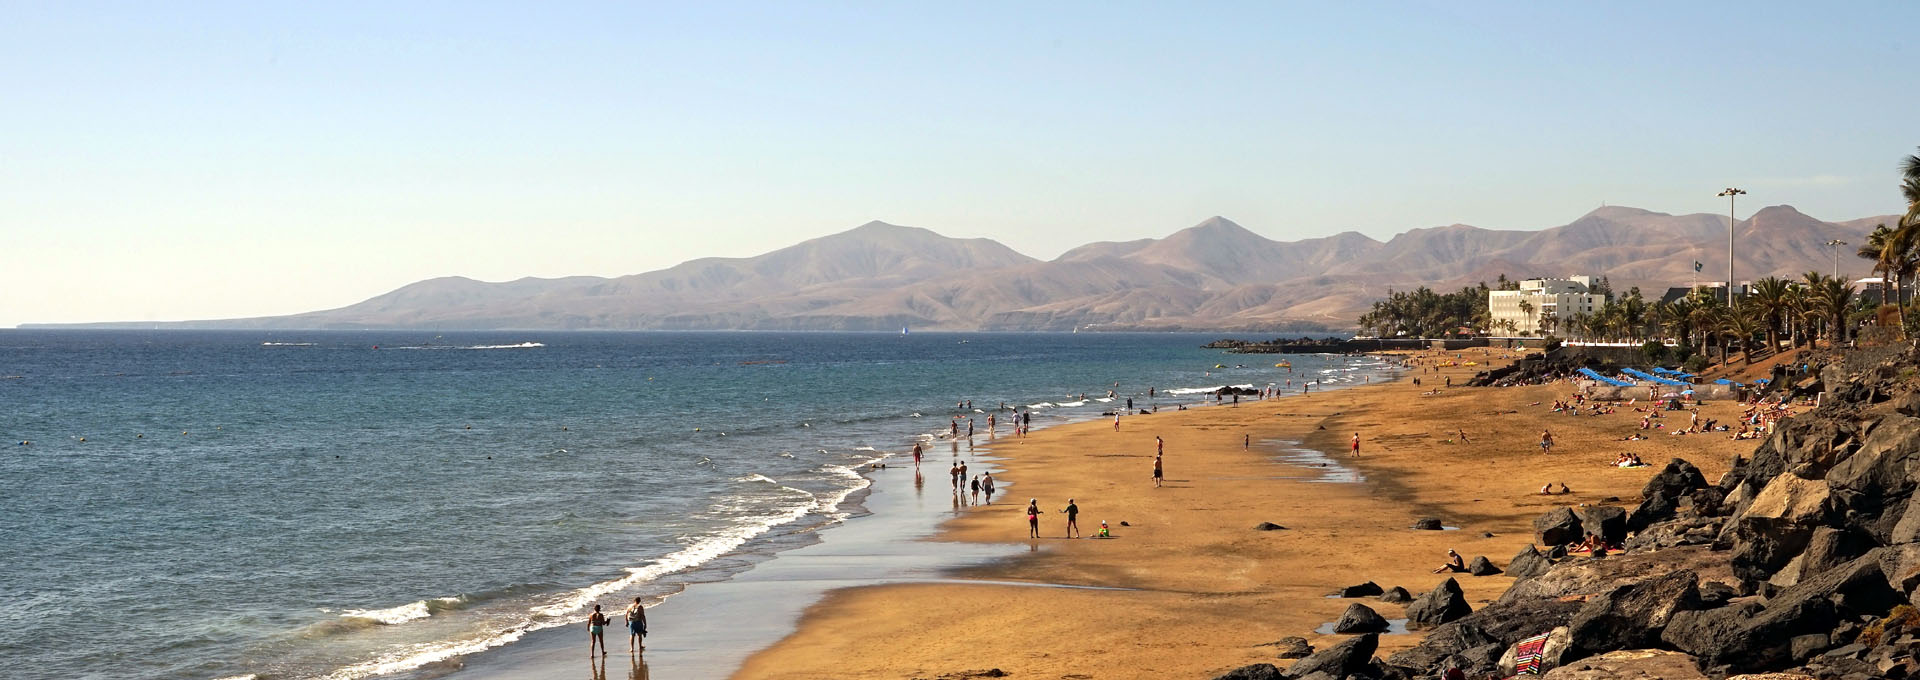 Playa del Carmen Lanzarote